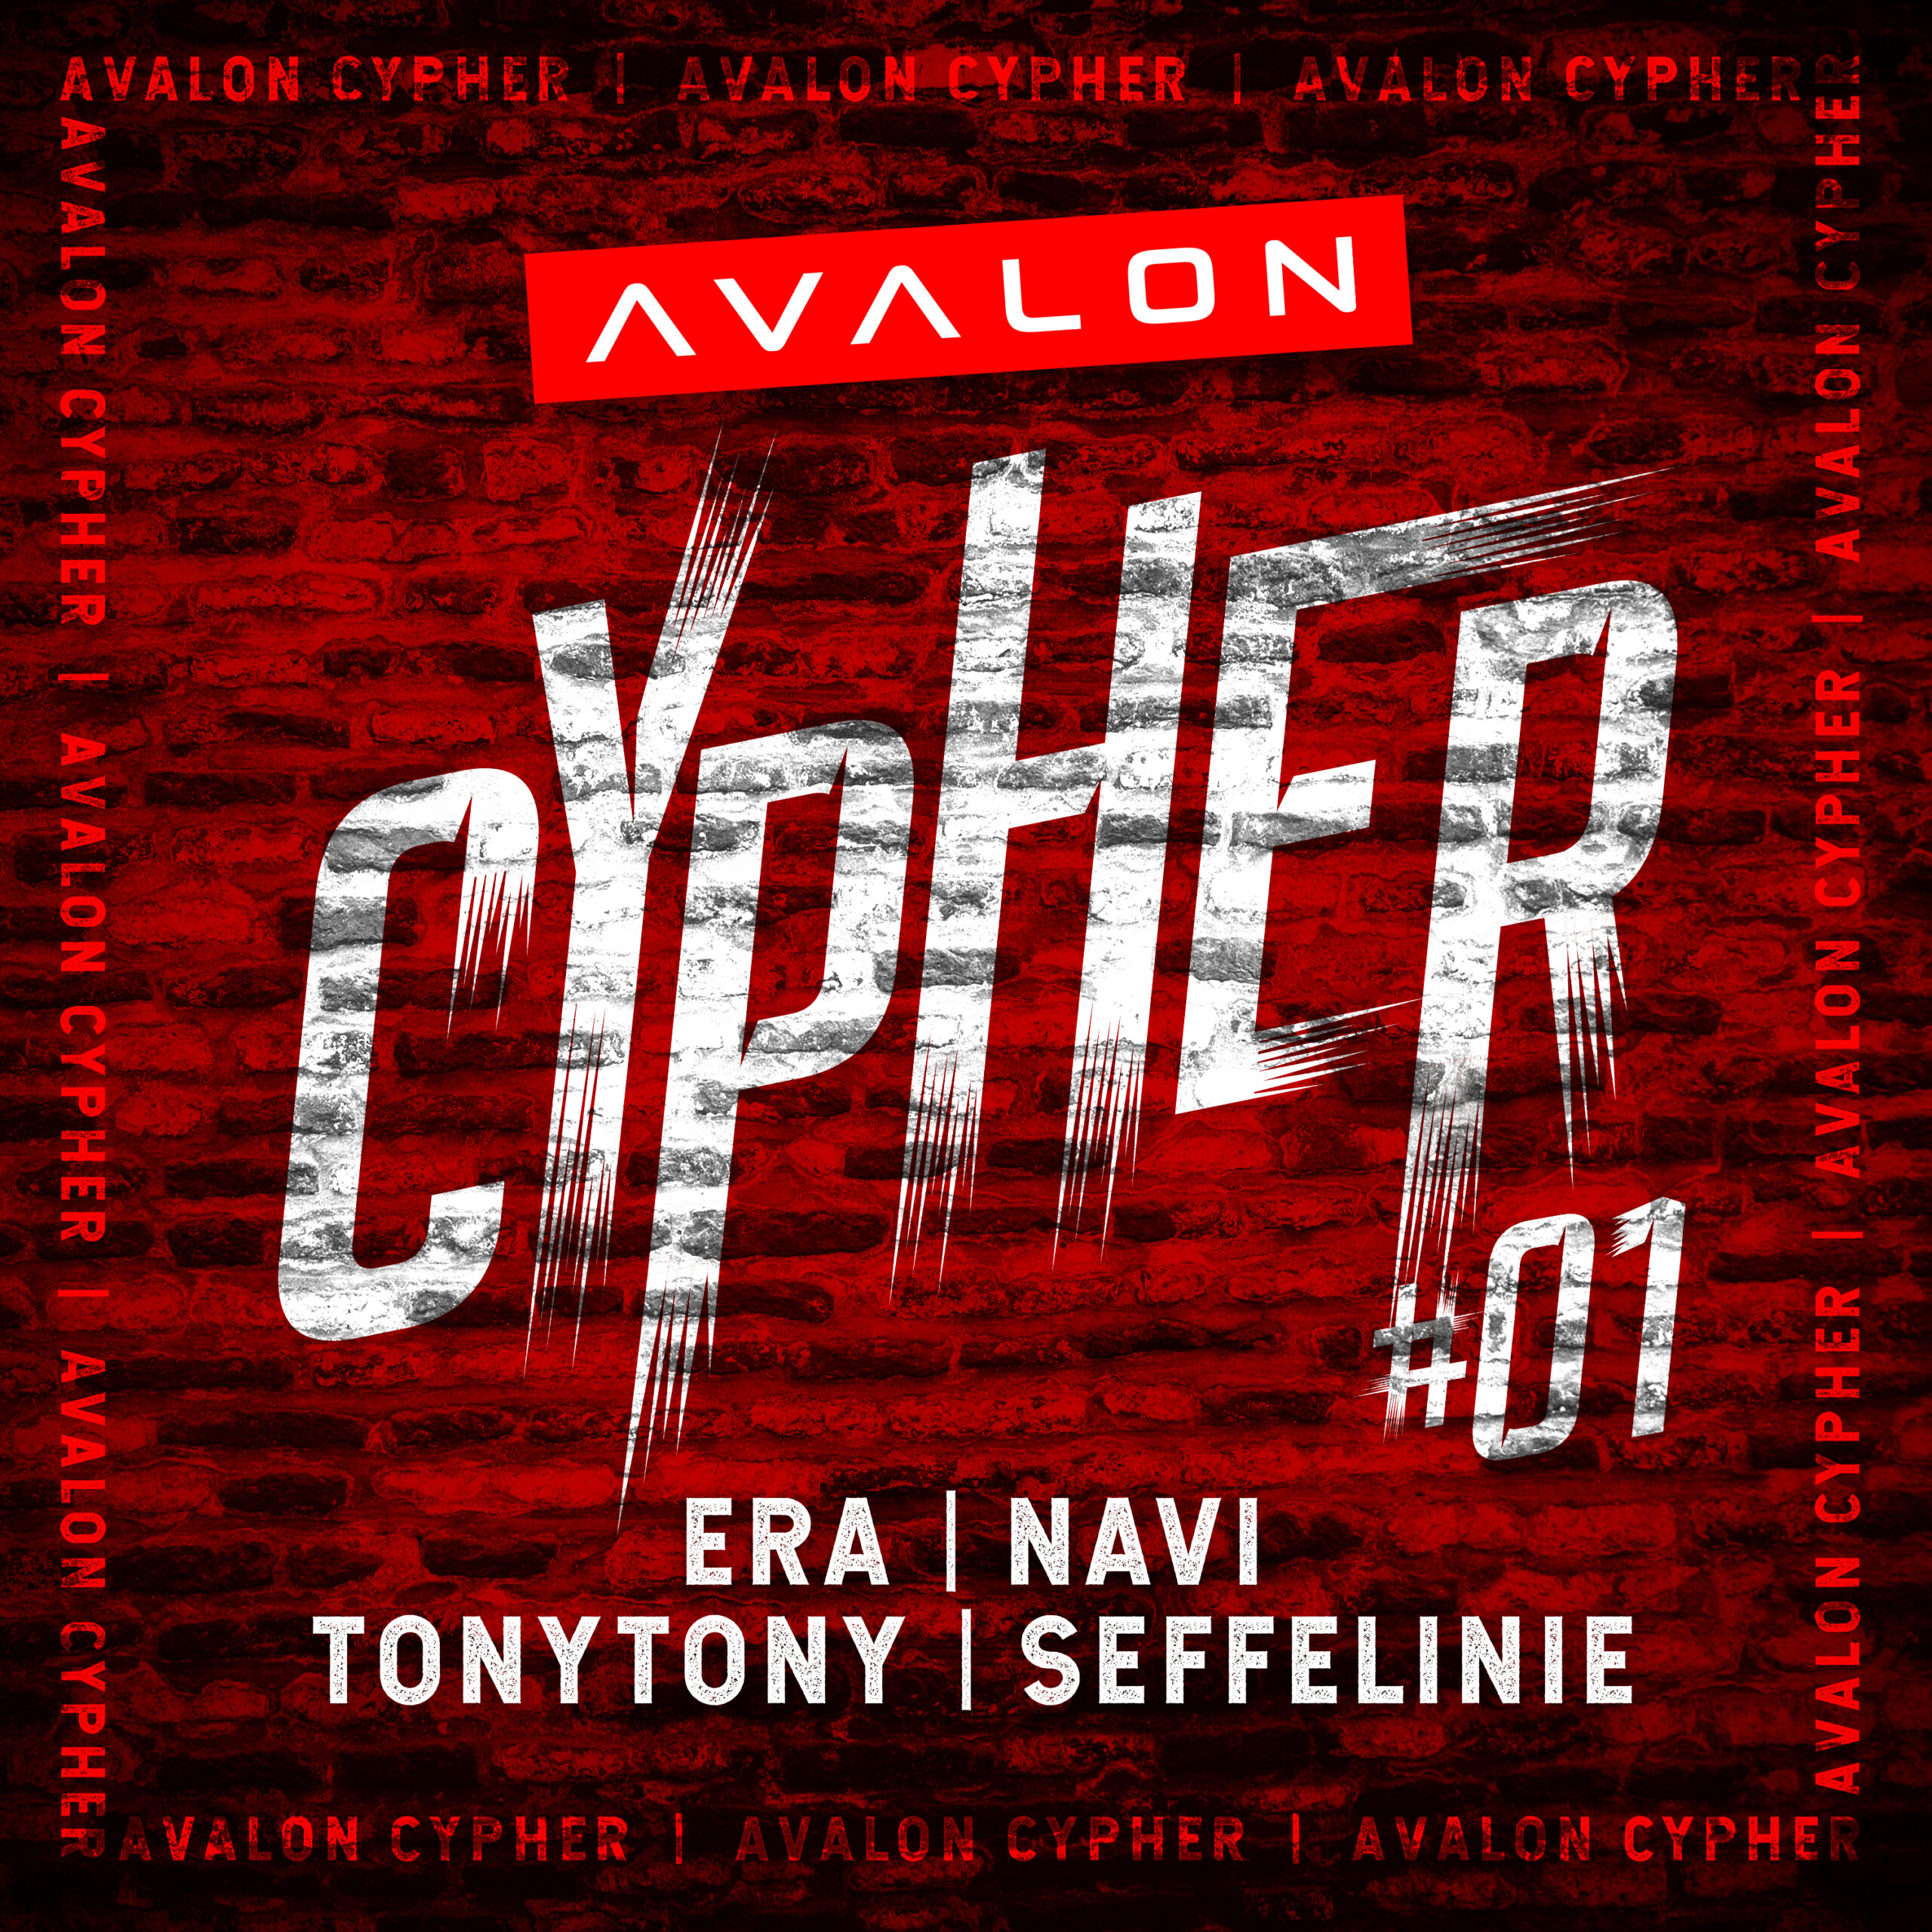 Eerste Avalon Cypher is een feit!